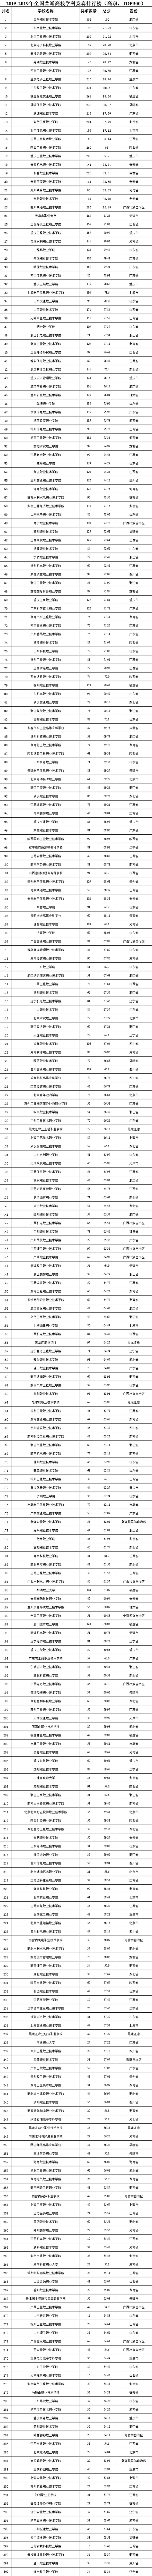 2015-2019年全国普通高校学科竞赛排行榜高职TOP300